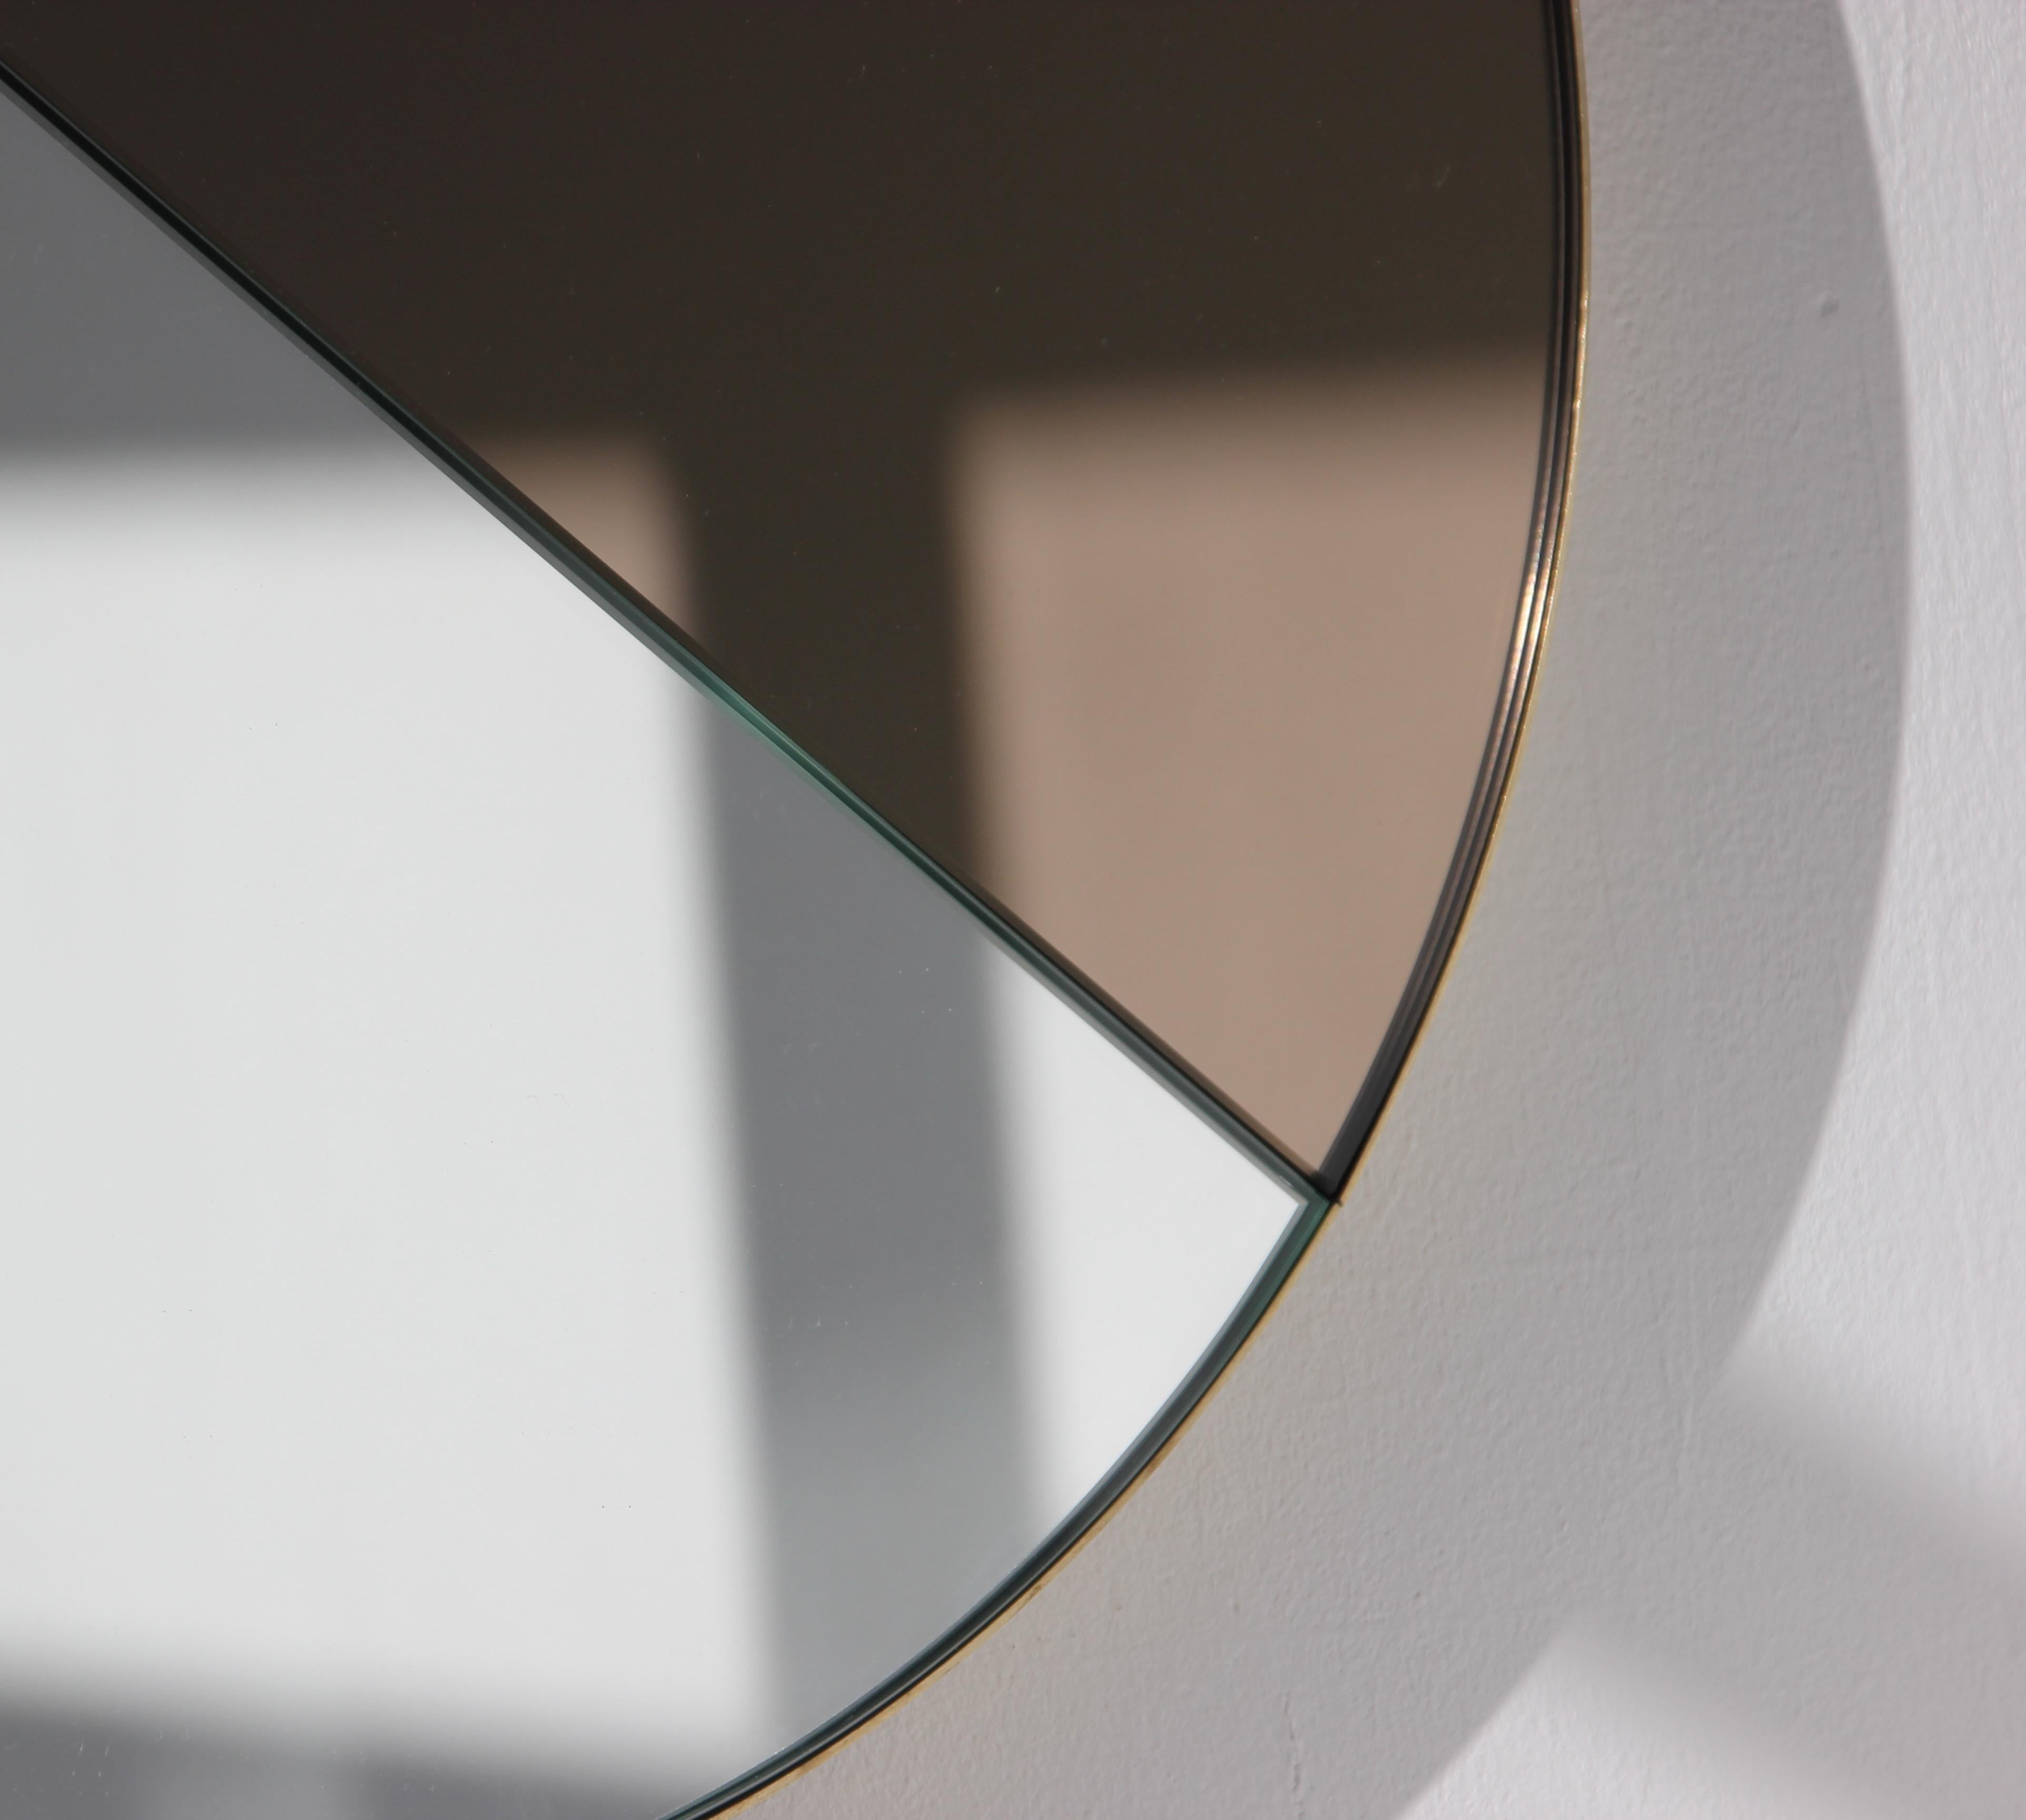 Miroir Orbis Dualis™ contemporain mixte teinté de bronze et d'argent avec un élégant cadre massif en laiton brossé.  Conçu et fabriqué à la main à Londres, au Royaume-Uni.

Tous les miroirs sont équipés d'un ingénieux système de tasseaux à la